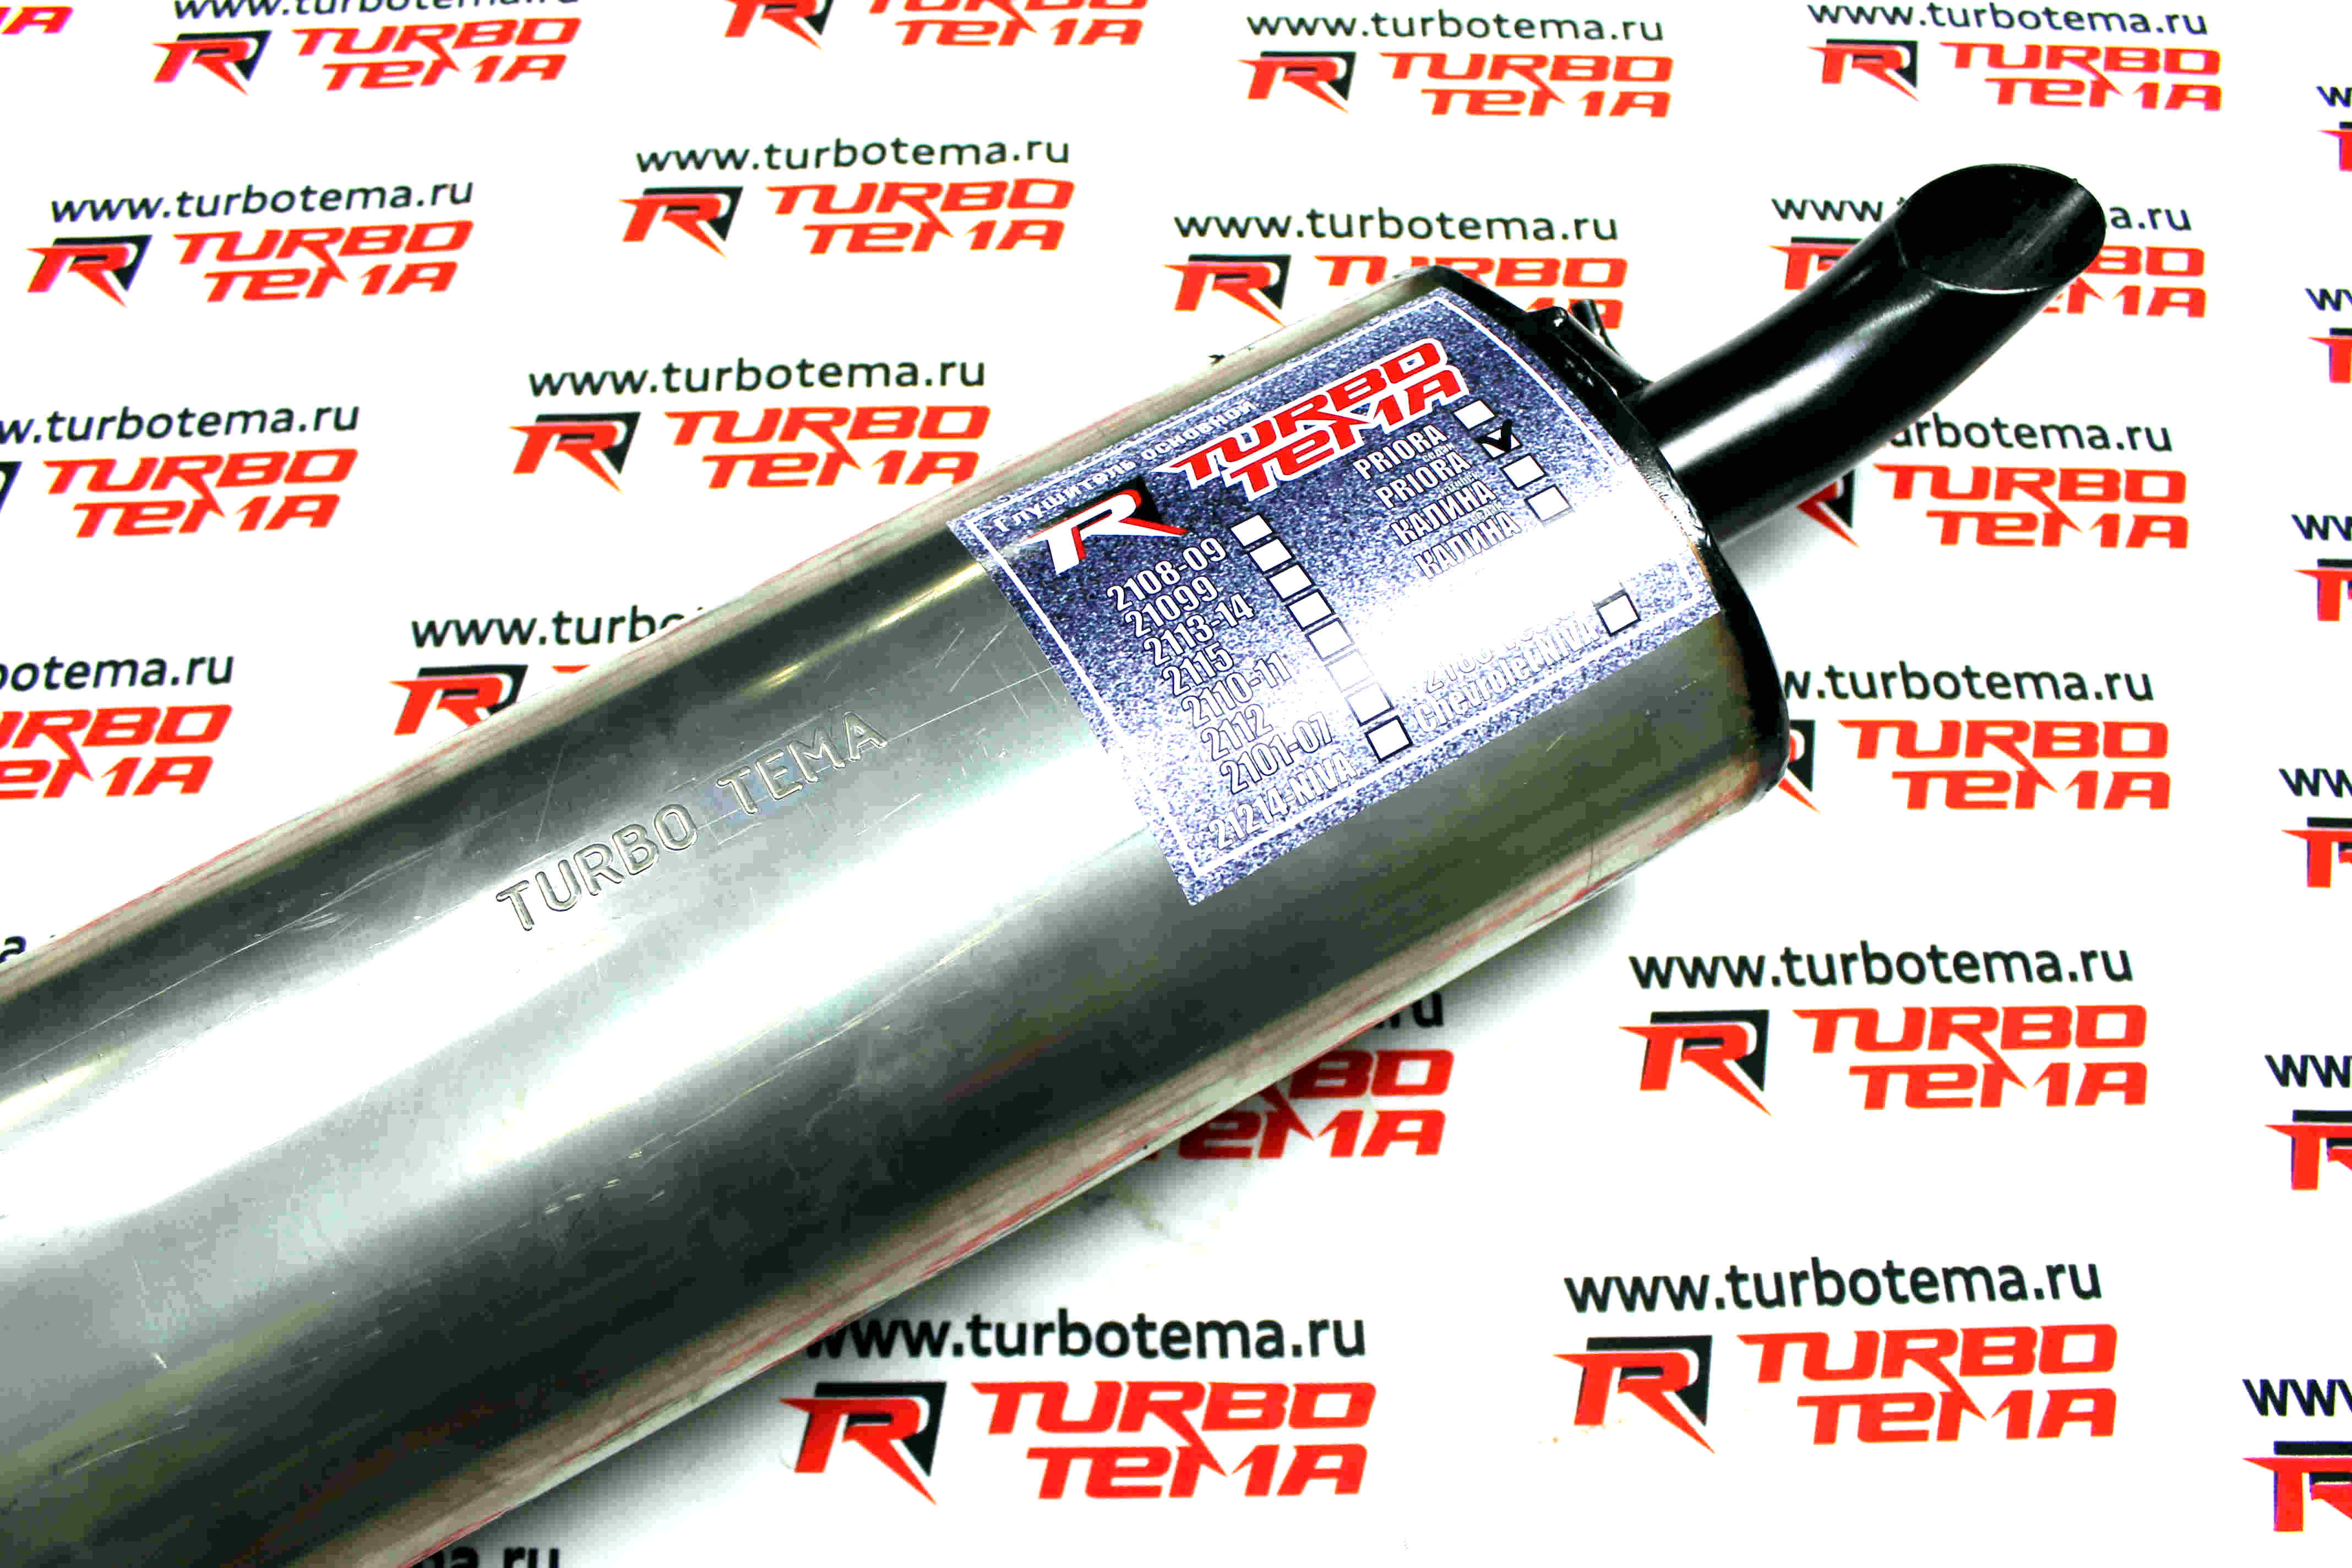 Глушитель "TURBOTEMA" для а/м ВАЗ 2172 Приора штатная установка без насадки бочка из нержавеющей стали. Фото �5